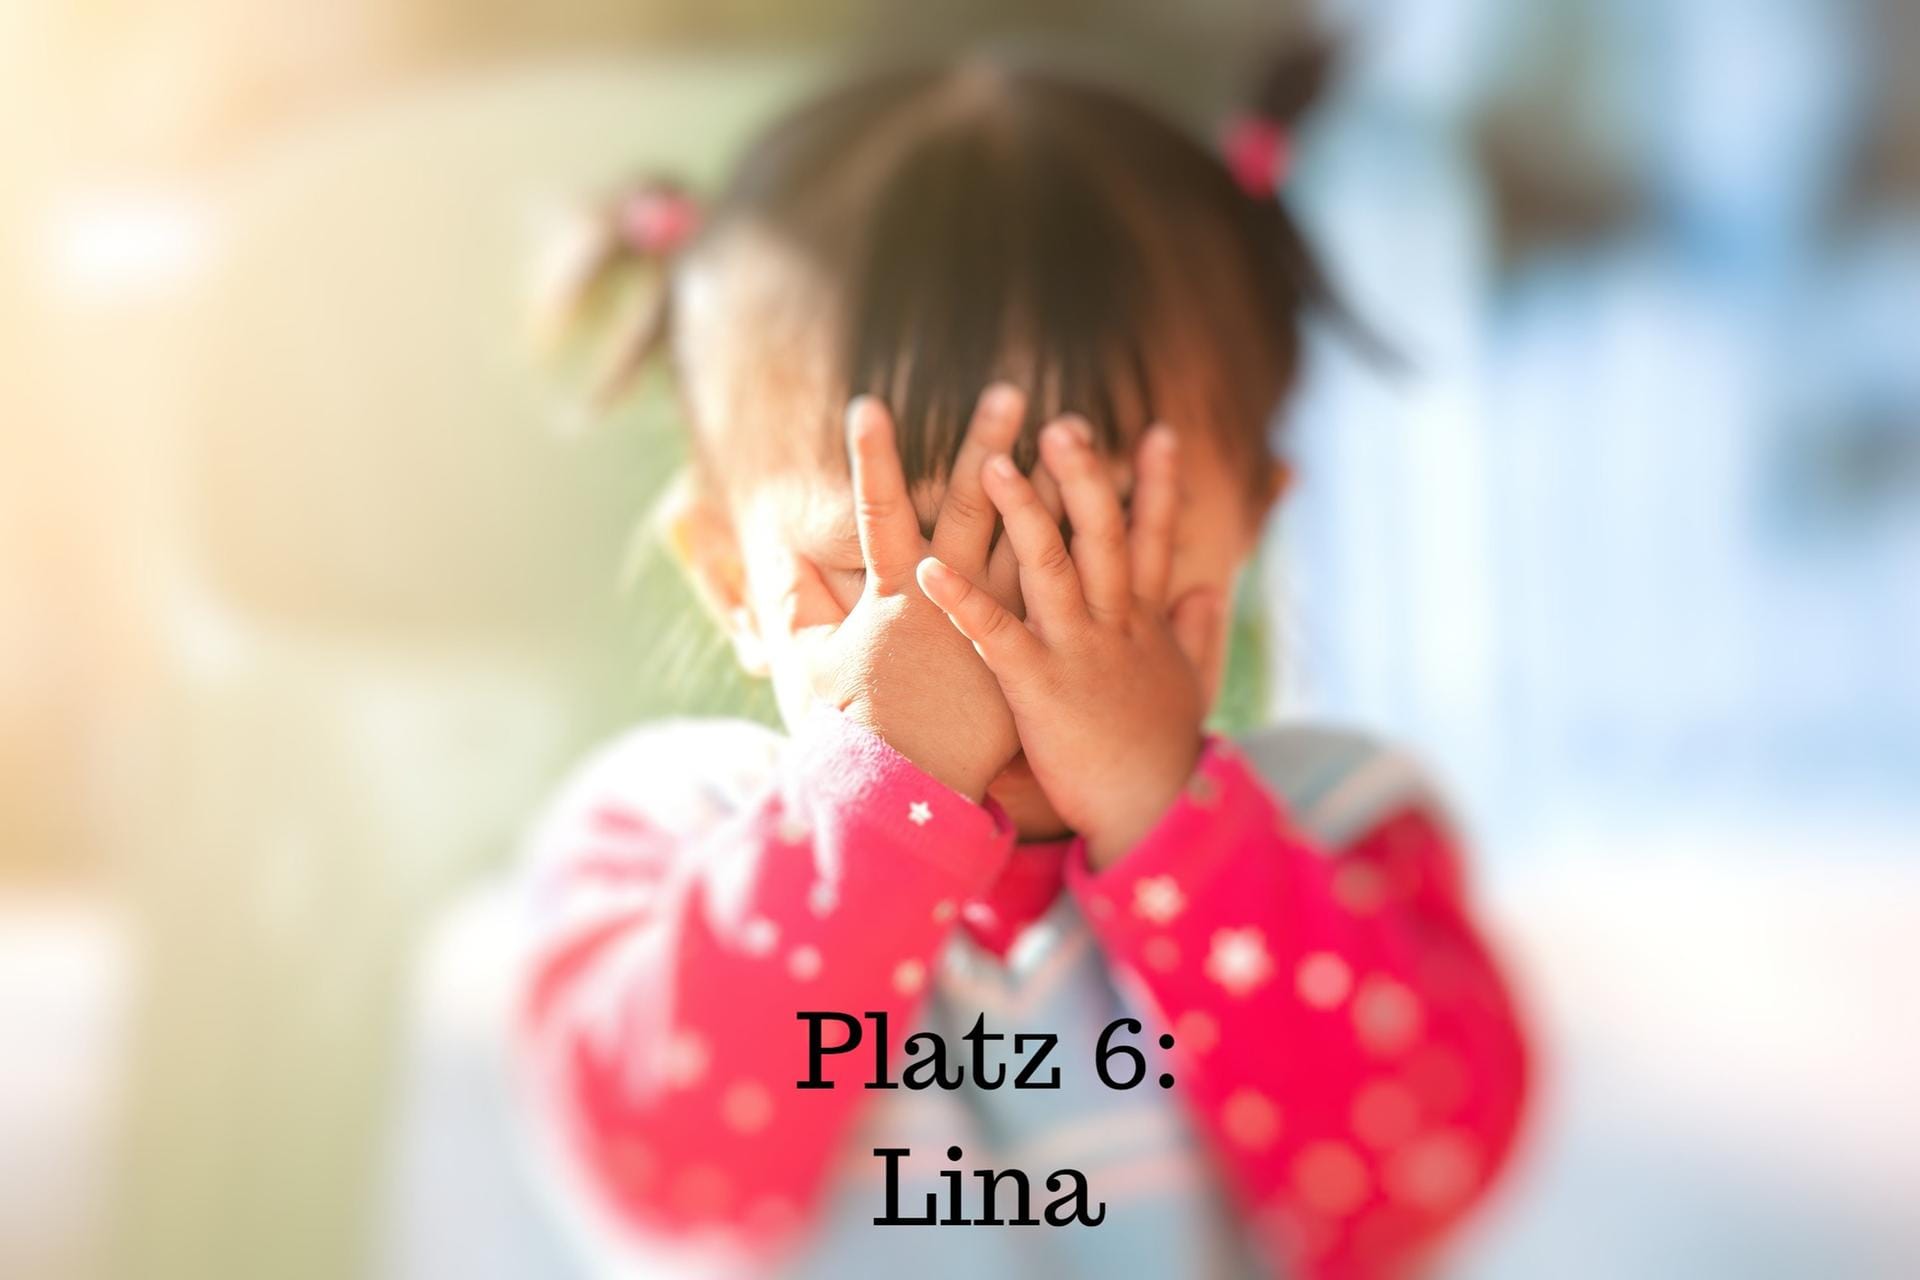 Platz 6: Lina – Der Name kommt aus dem lateinischen und bedeutet "die Sanfte" oder "kleiner Engel". Der Namenstag für Lina ist der 23. September.